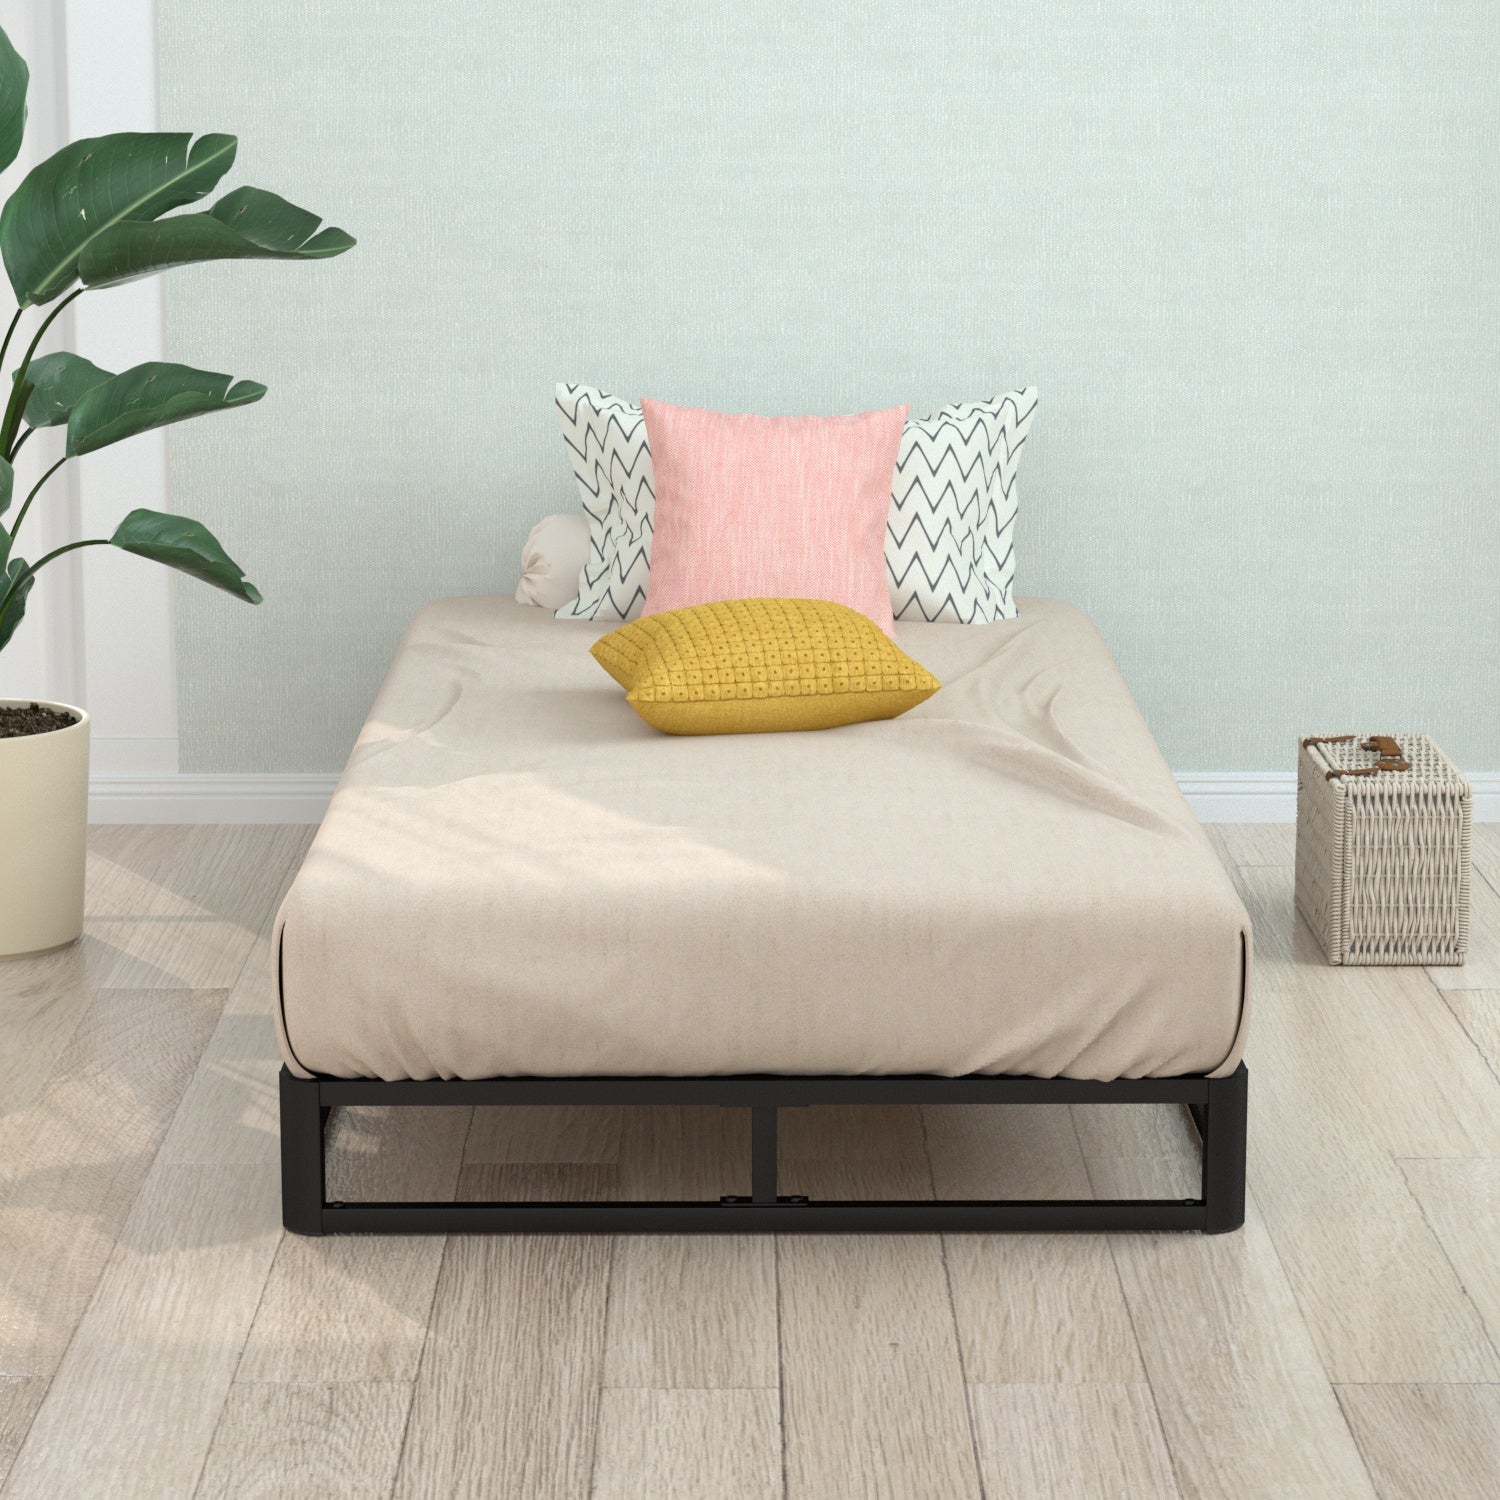 VENI Classic Metal Platform Bed with Wooden Slats